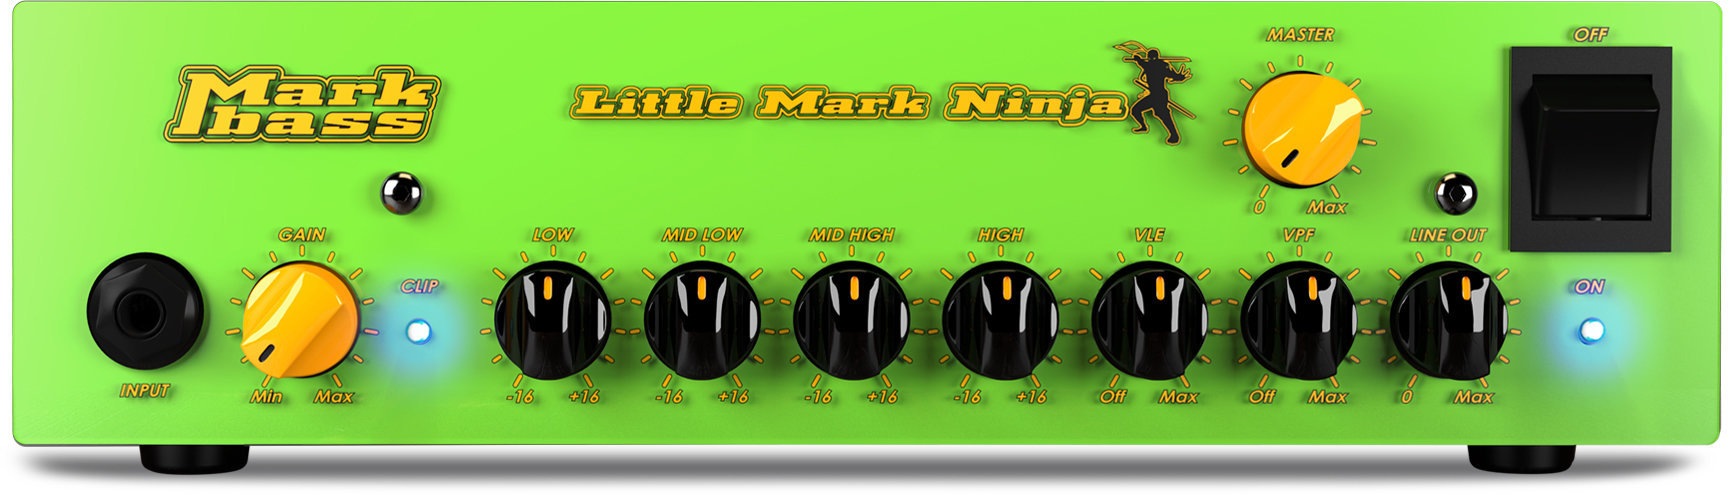 Solid-State Bass Amplifier Markbass Little Mark Ninja